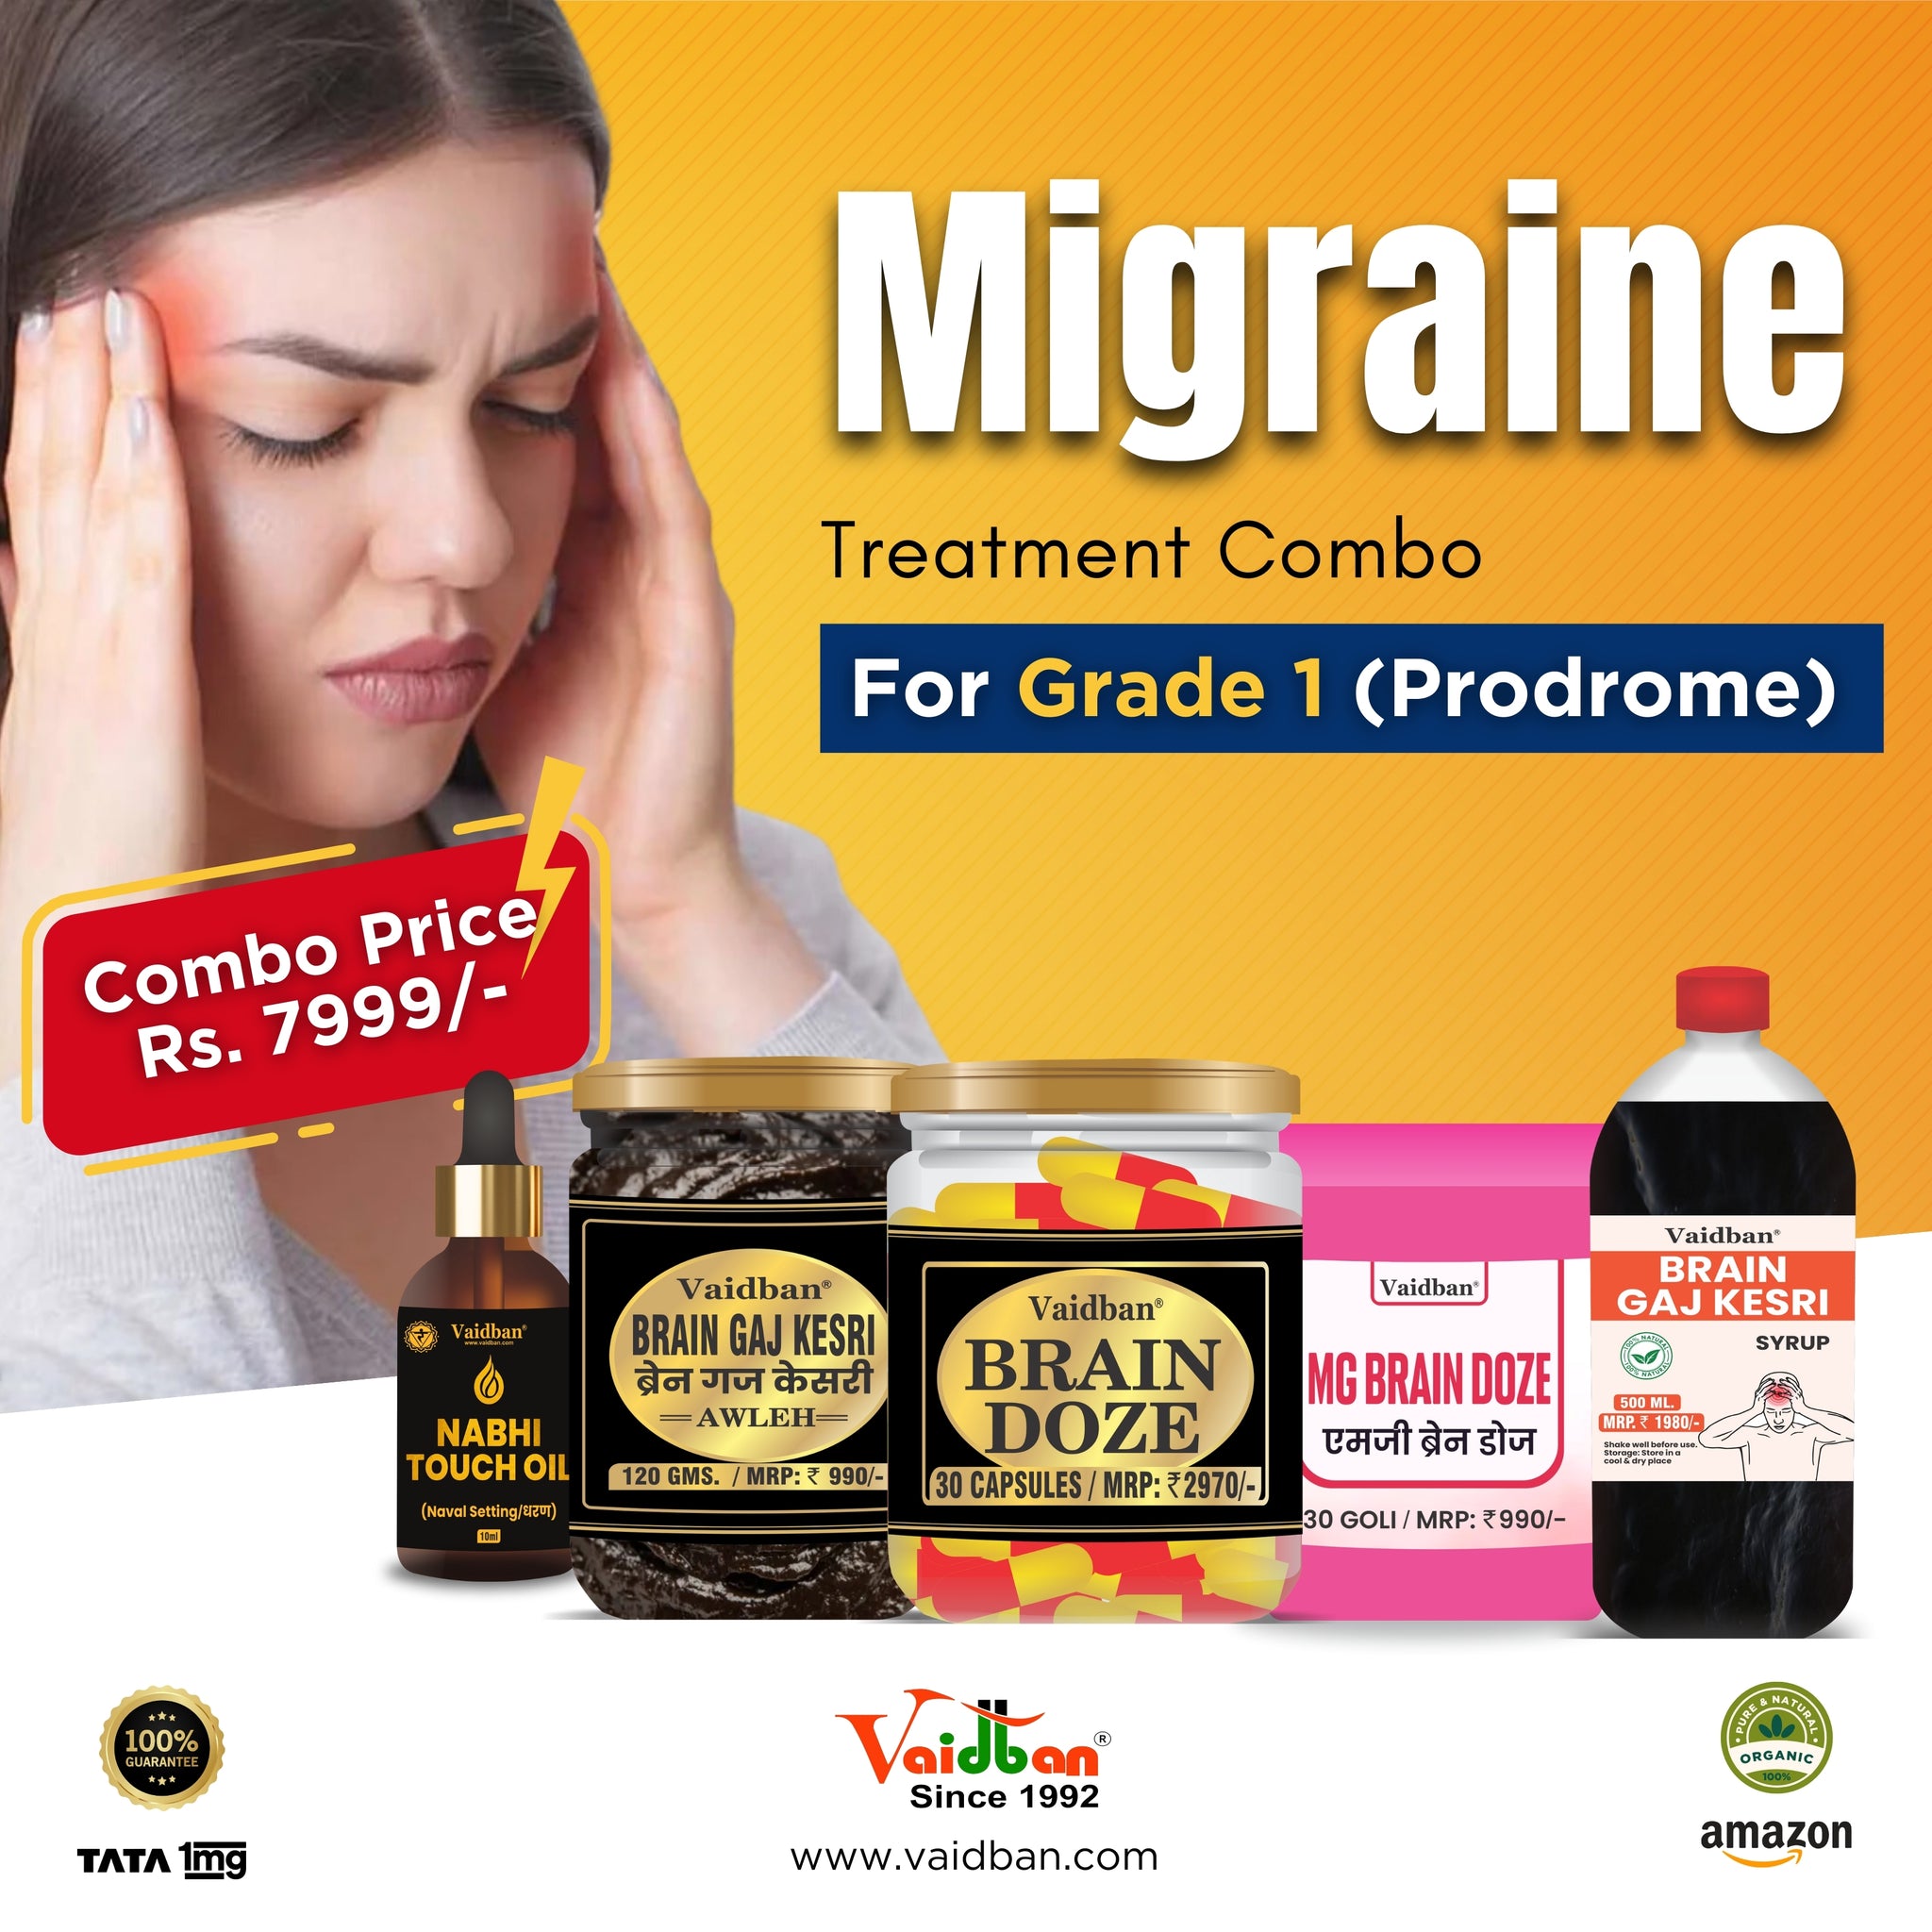 Vaidban Migraine Treatment Combo for Grade 1 (Prodrome)